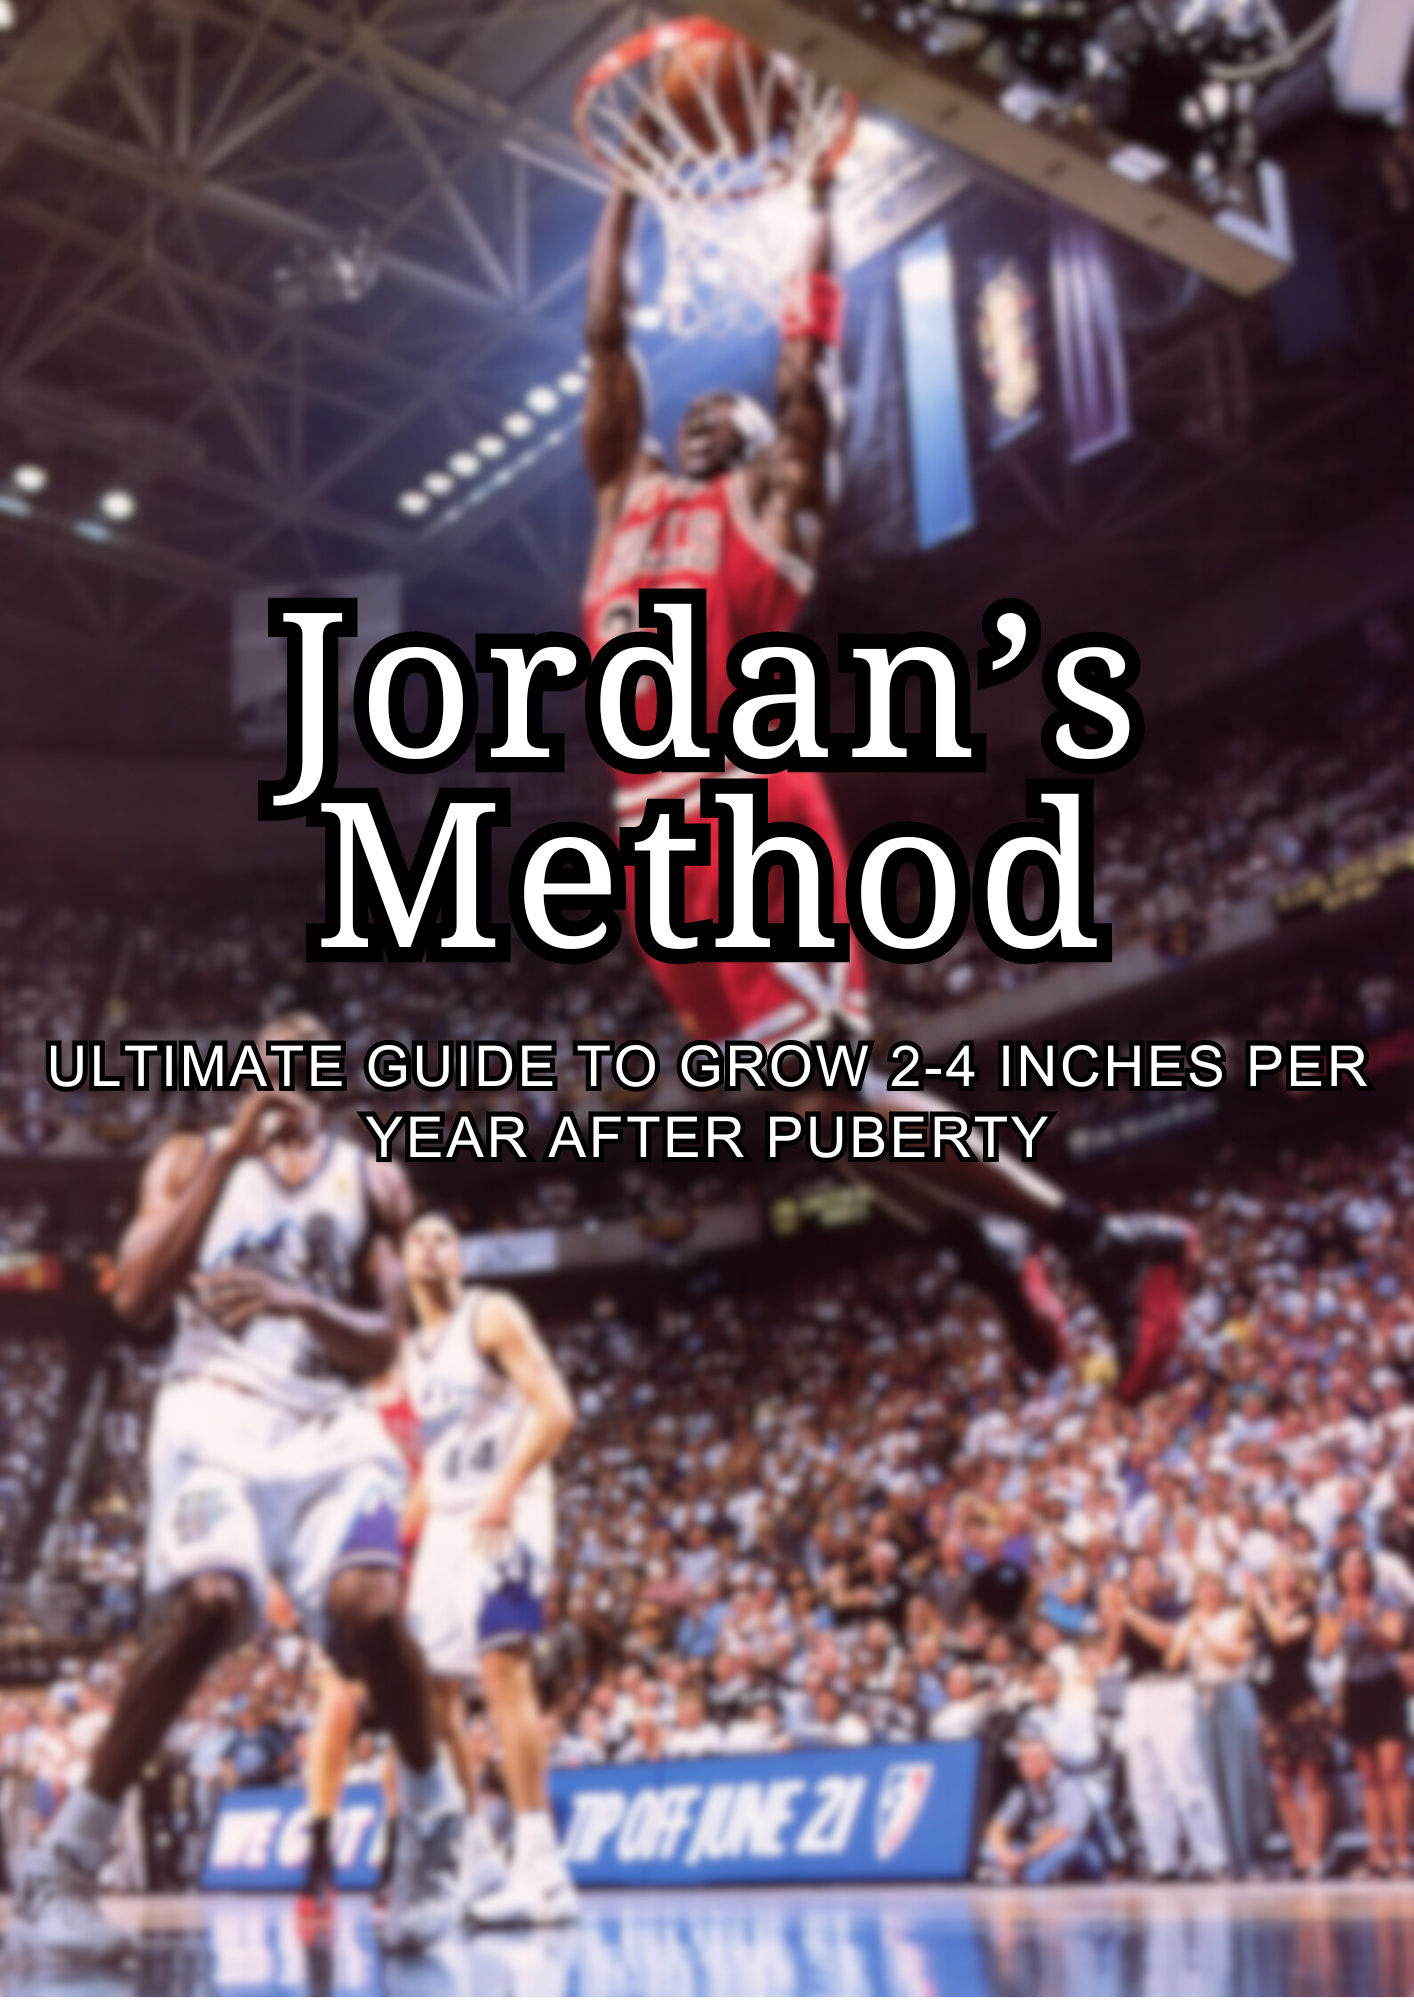 Jordan's Method